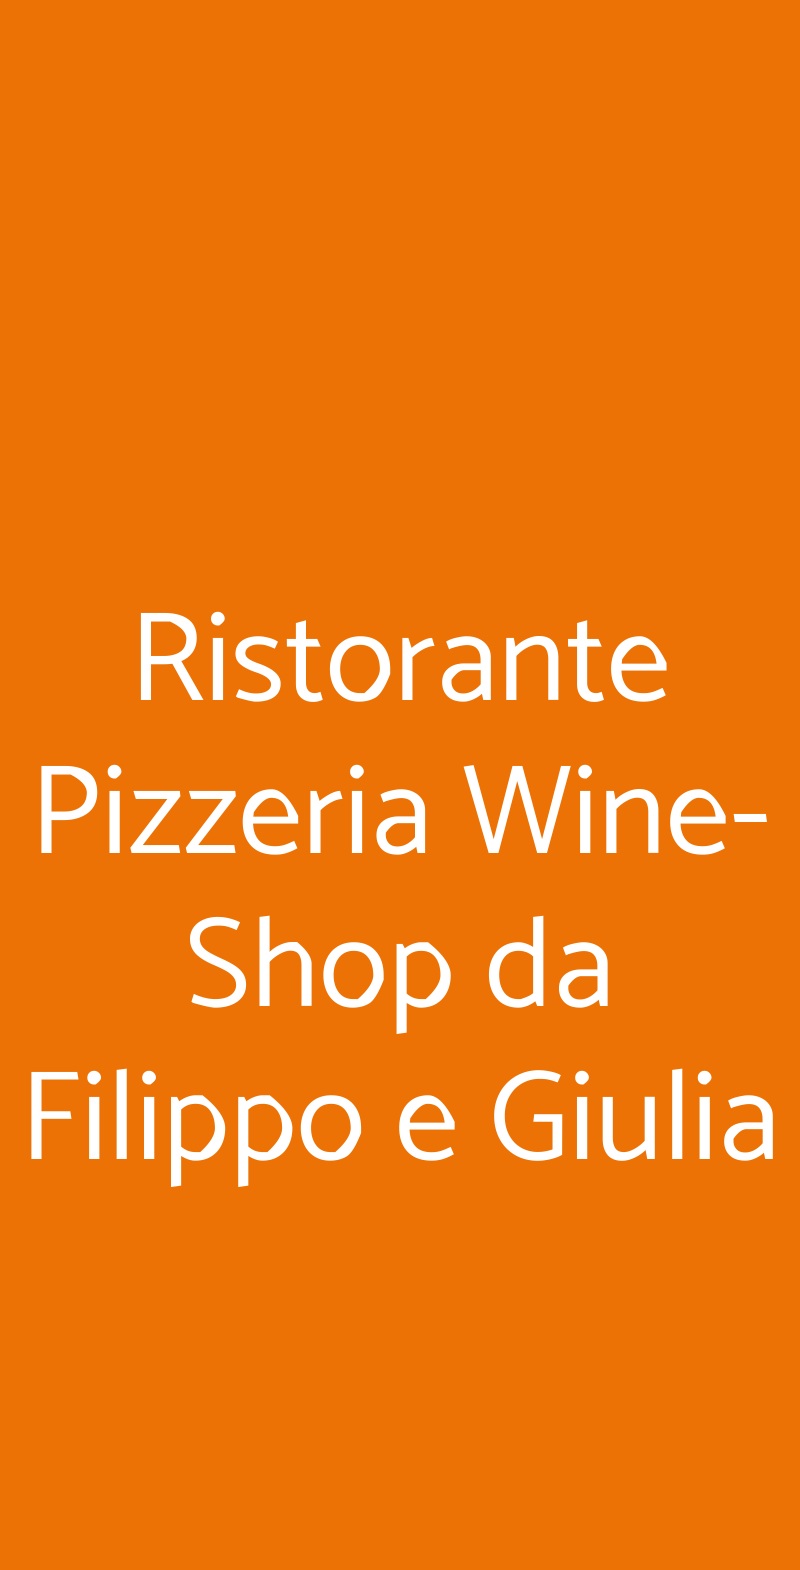 Ristorante Pizzeria Wine-Shop da Filippo e Giulia Cecina menù 1 pagina